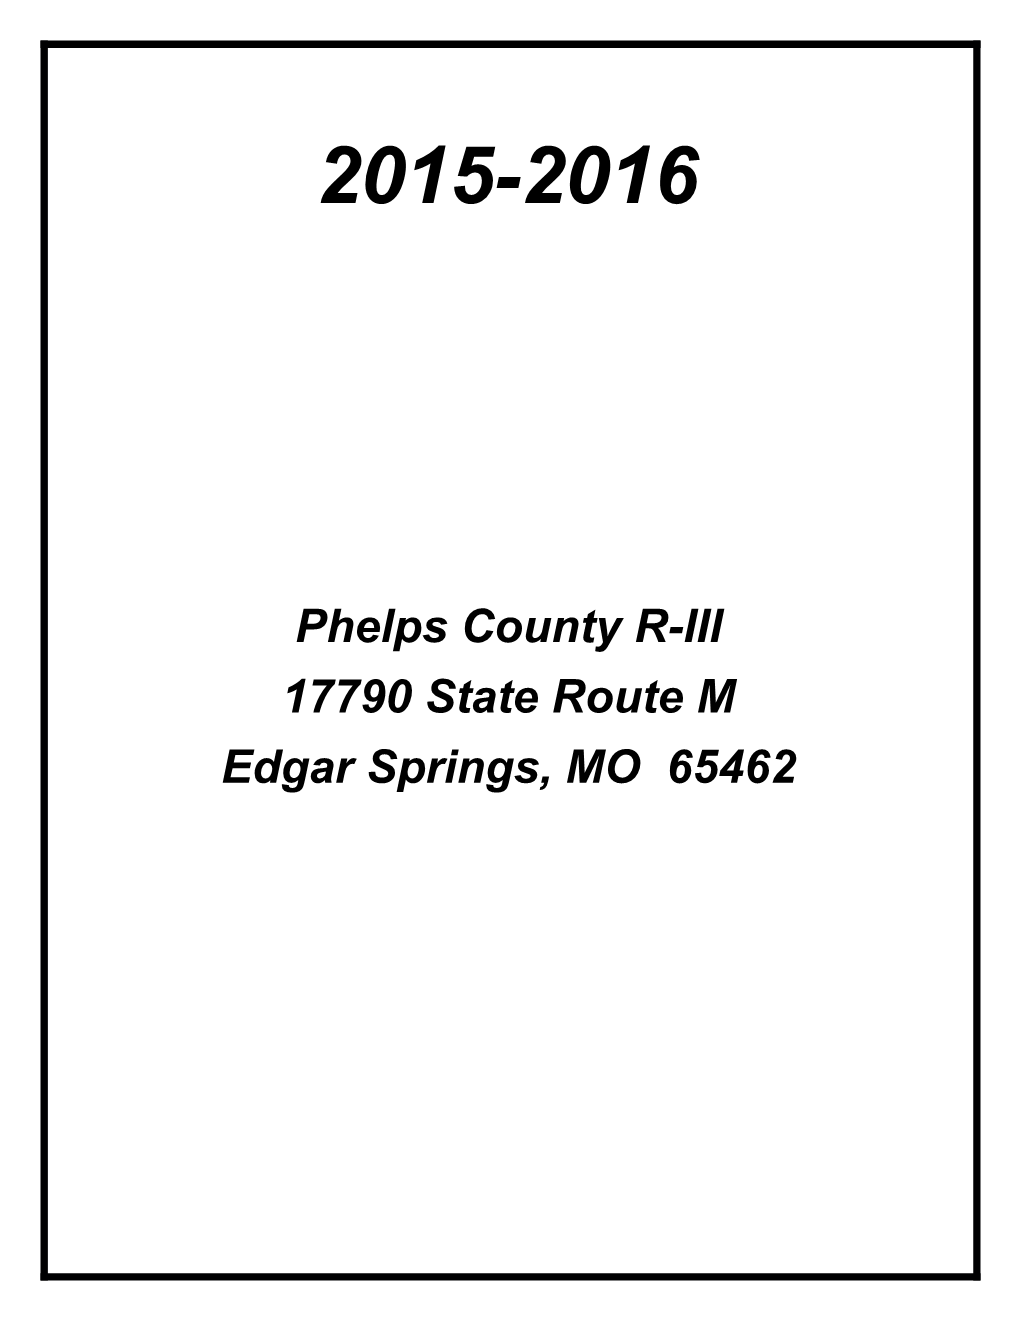 Phelps County R-III